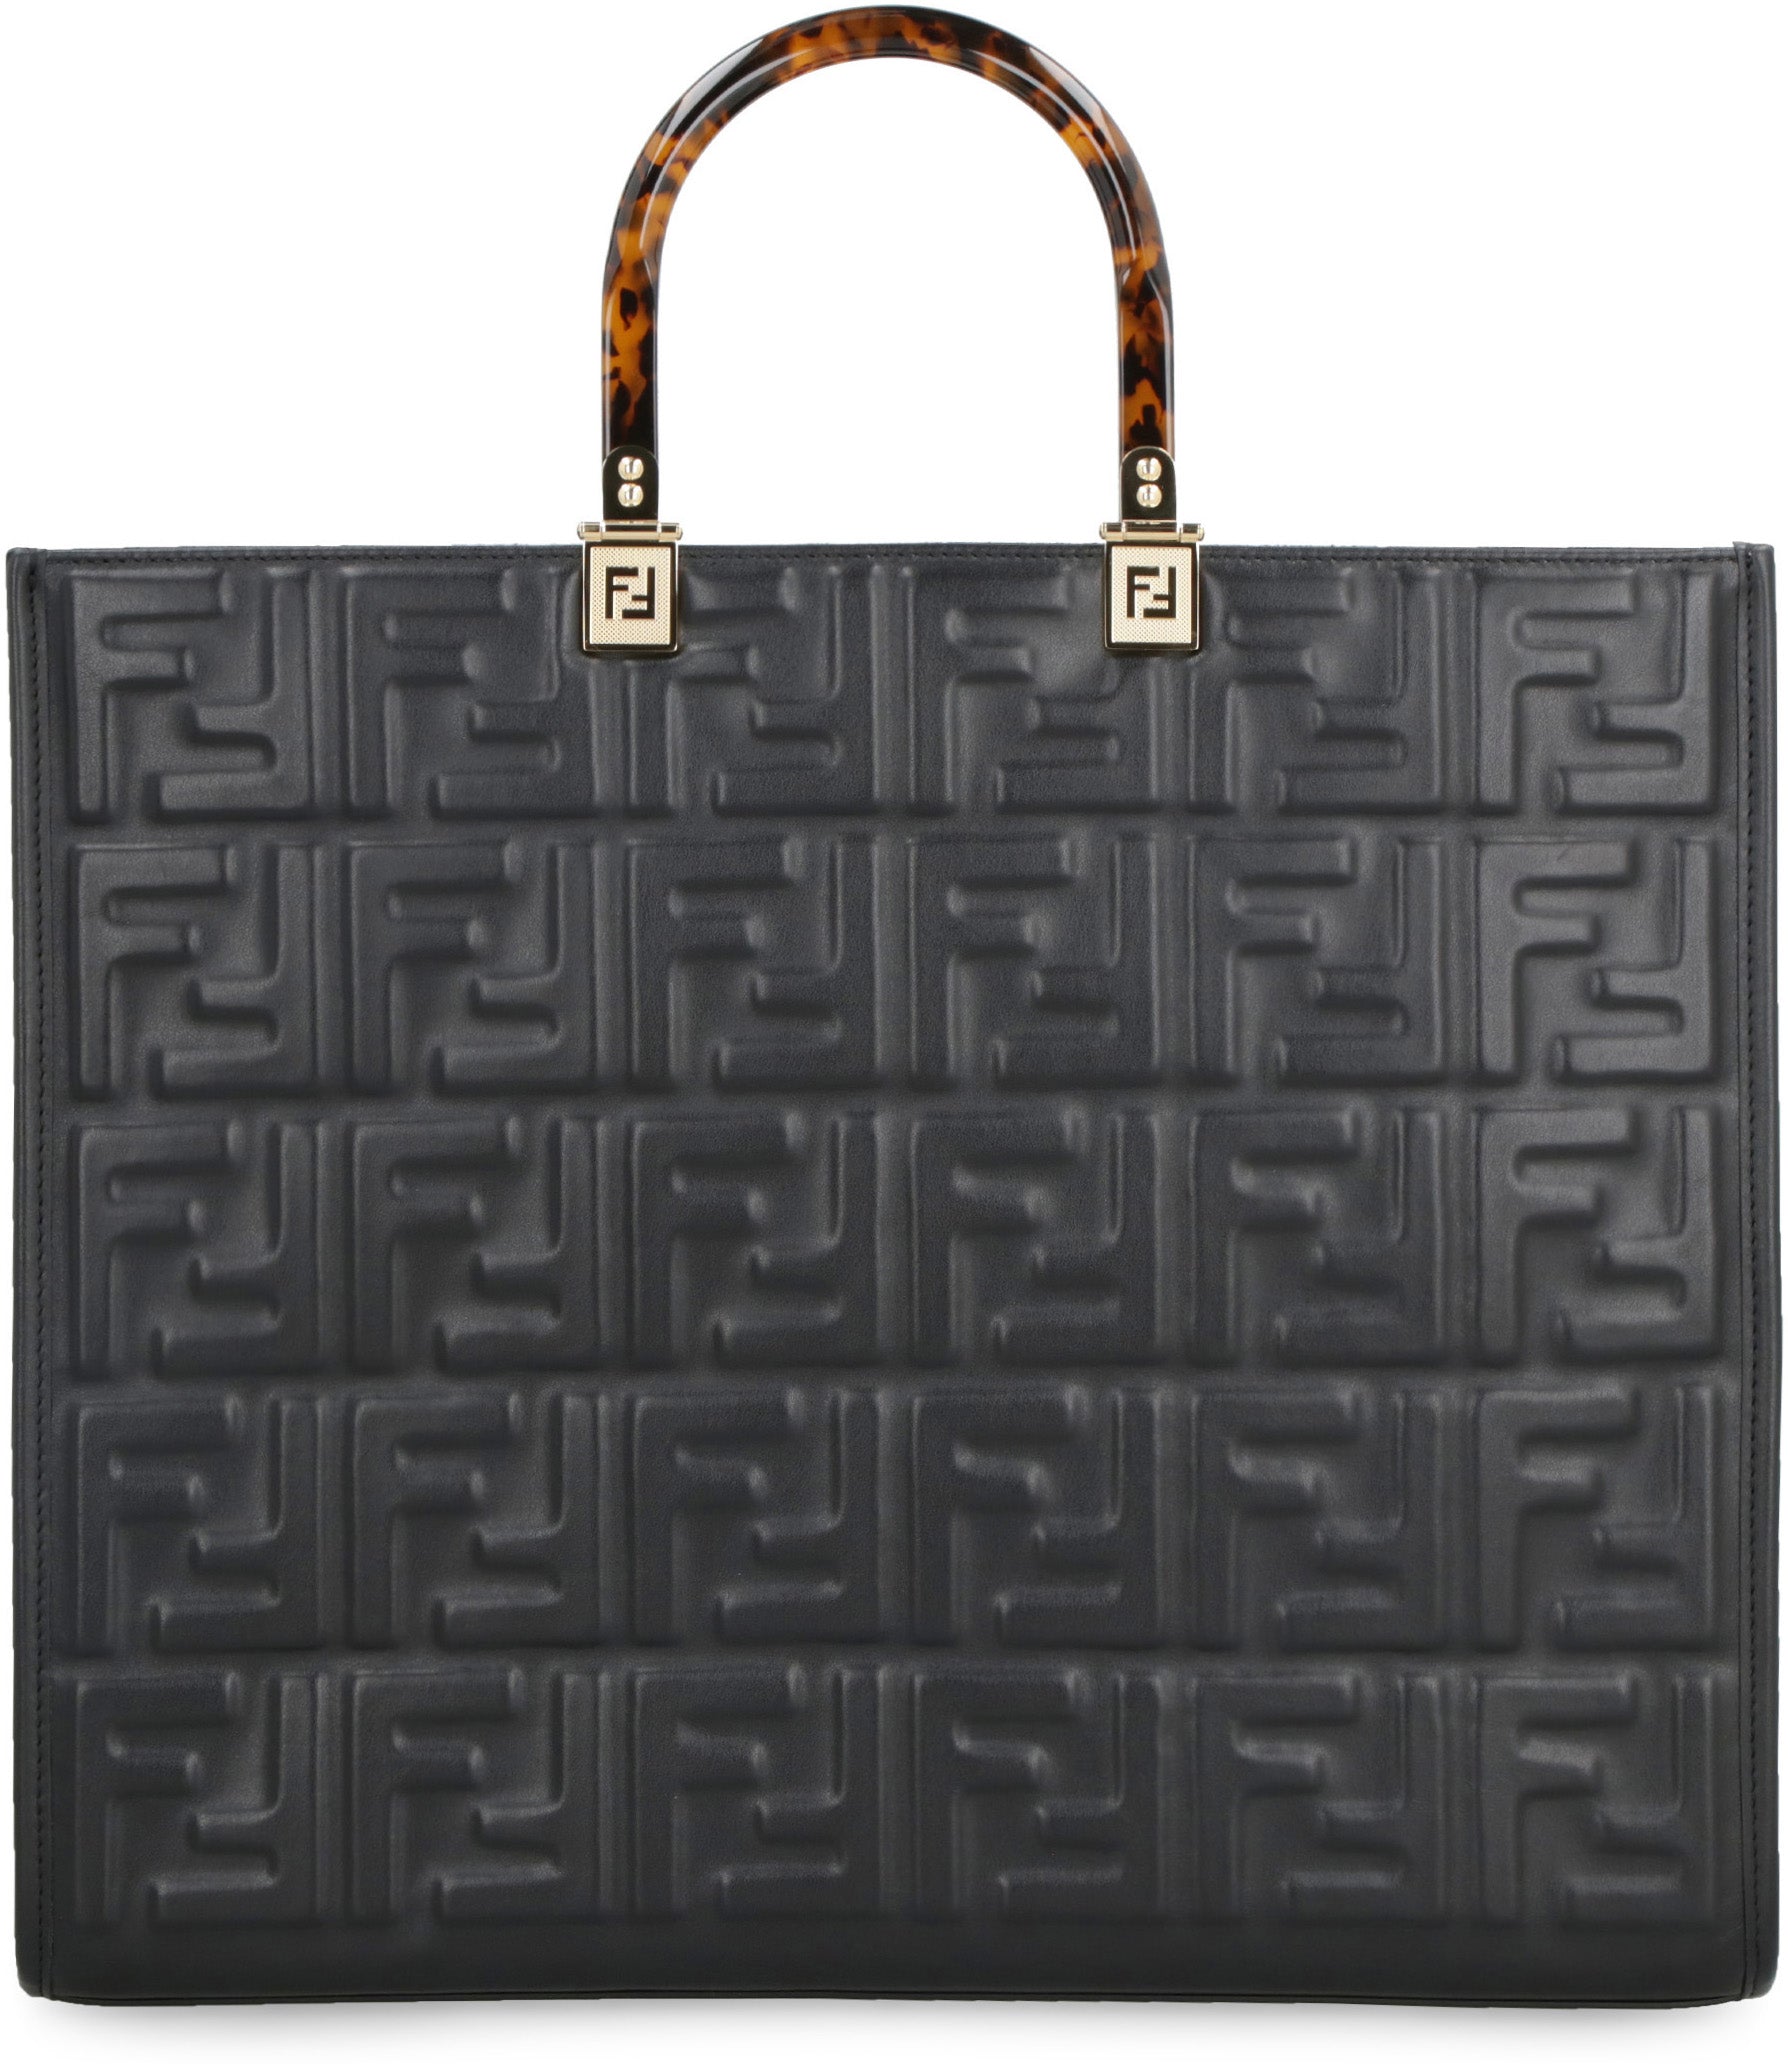 Dolce & Gabbana Logo Embossed Tote Bag in Black